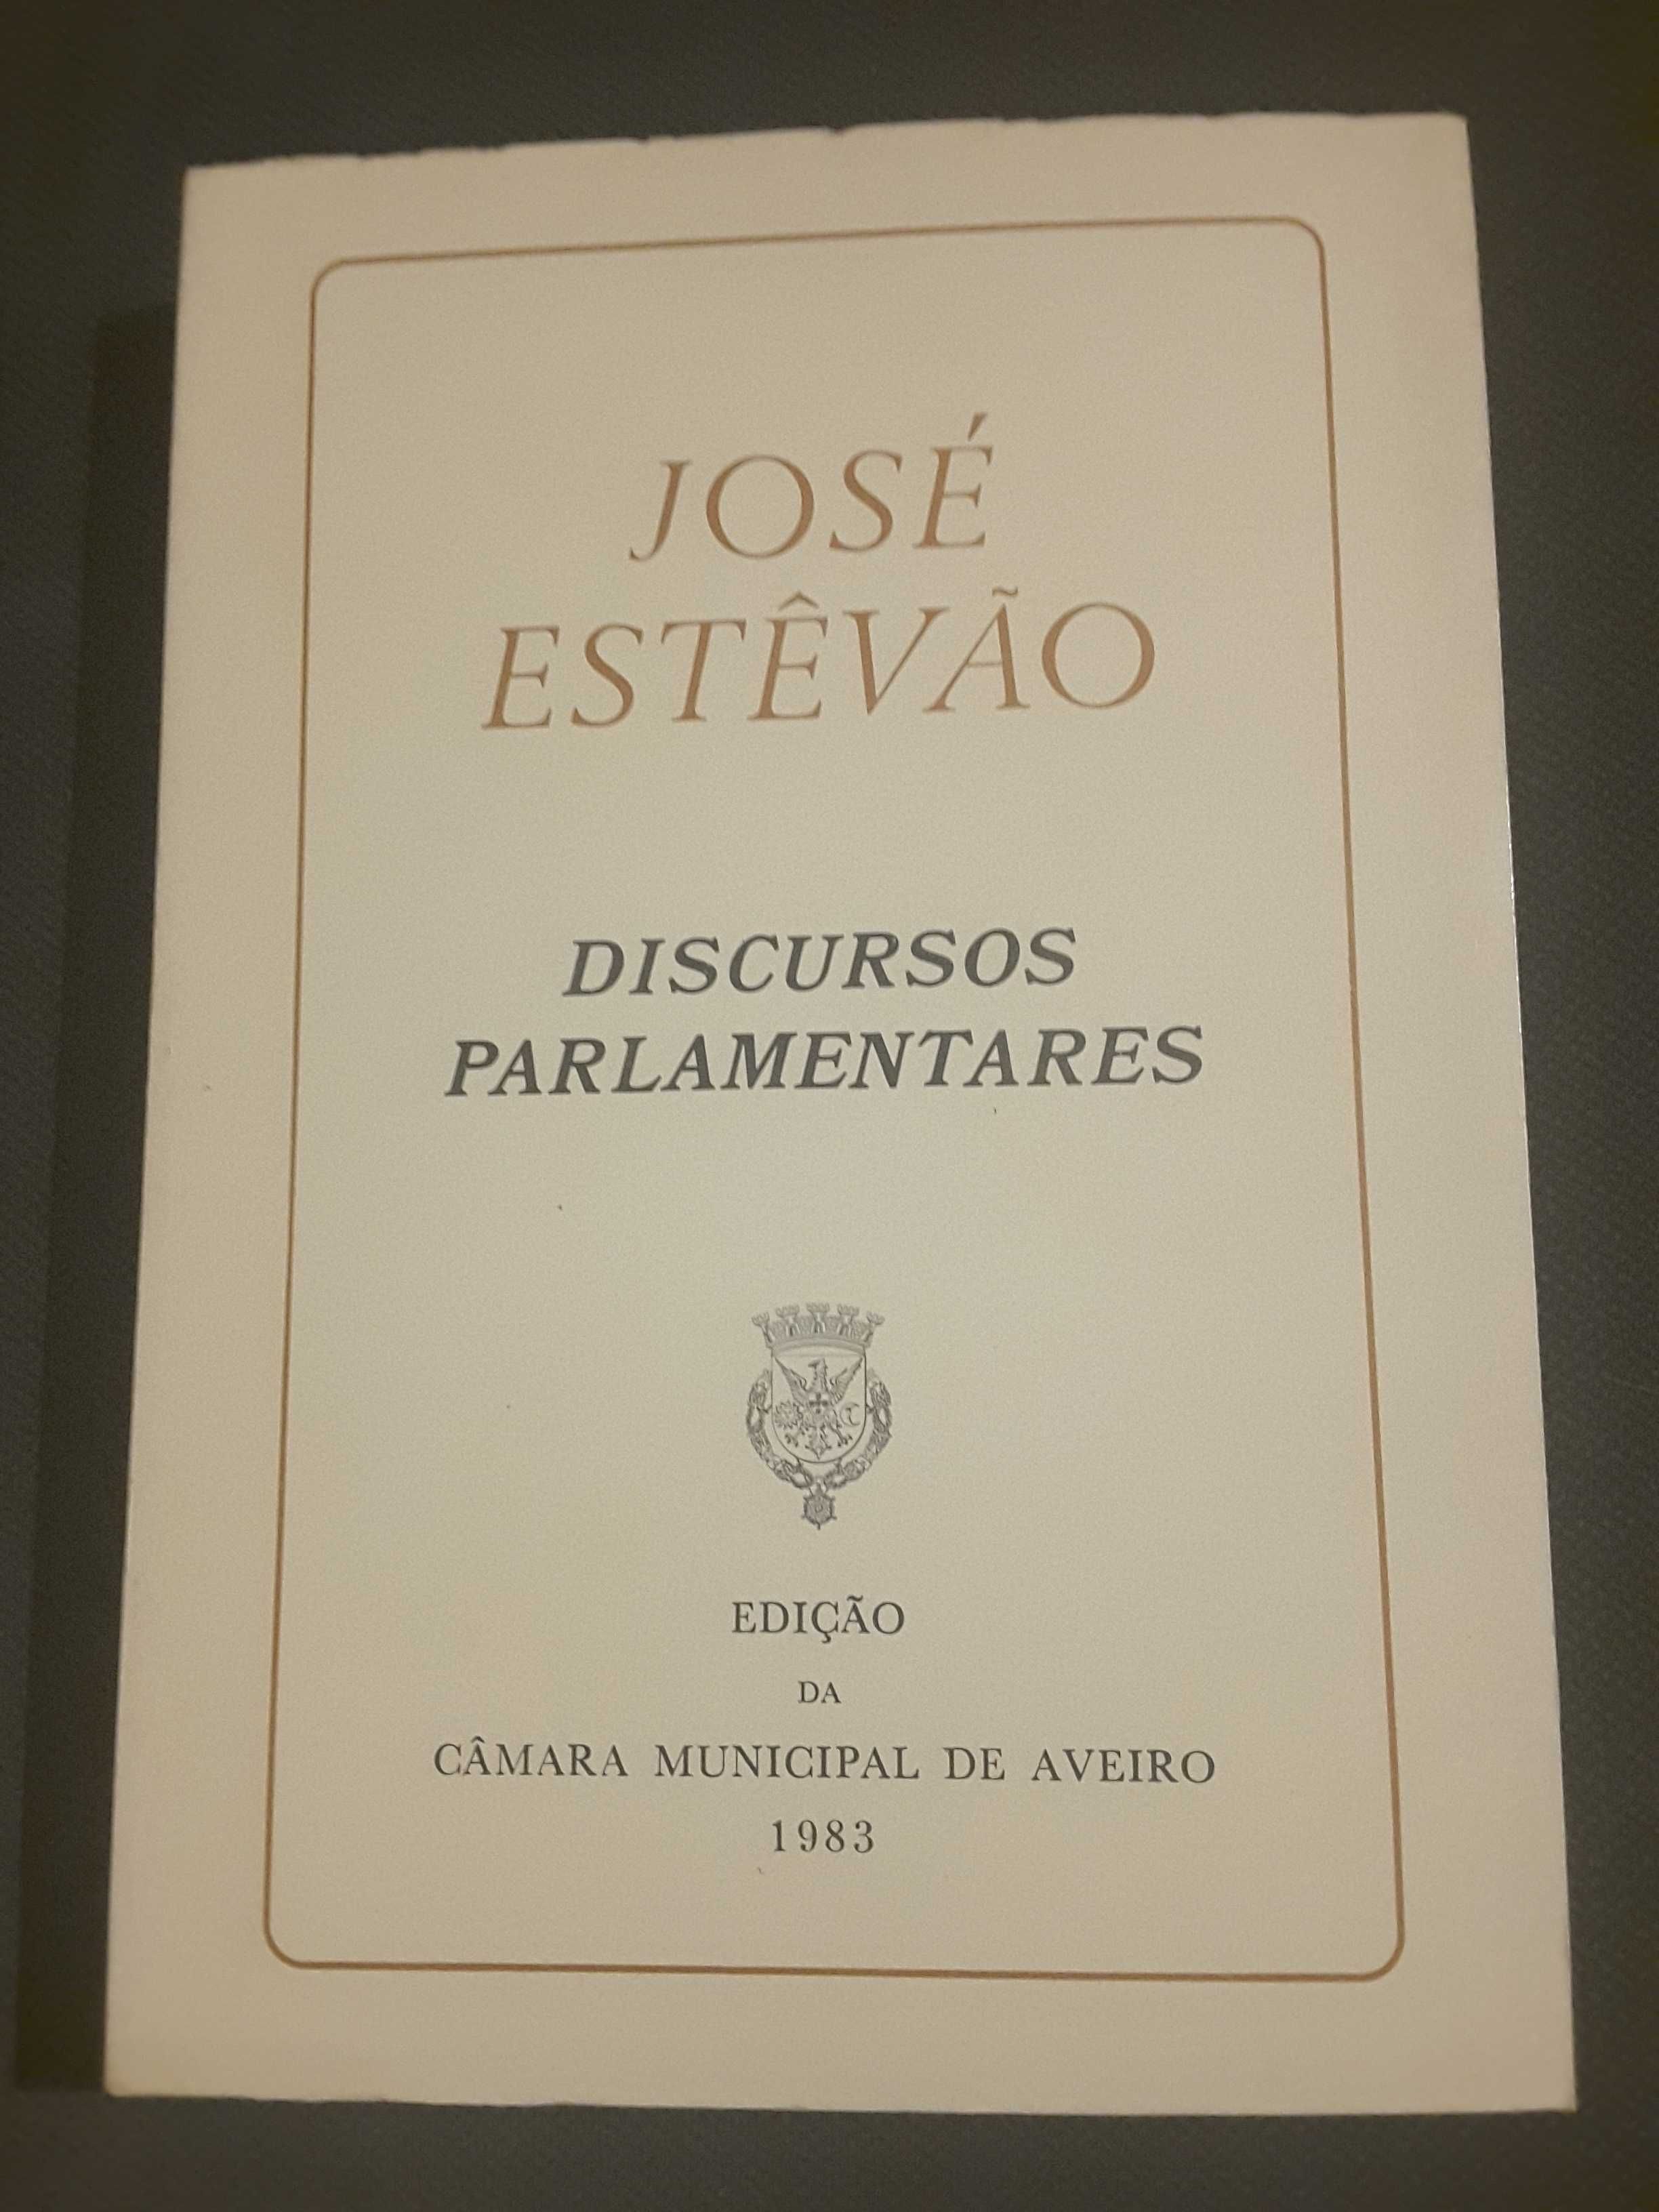 Bissaya Barreto Ordem e Progresso/ J. Estêvão: Discursos Parlamentares